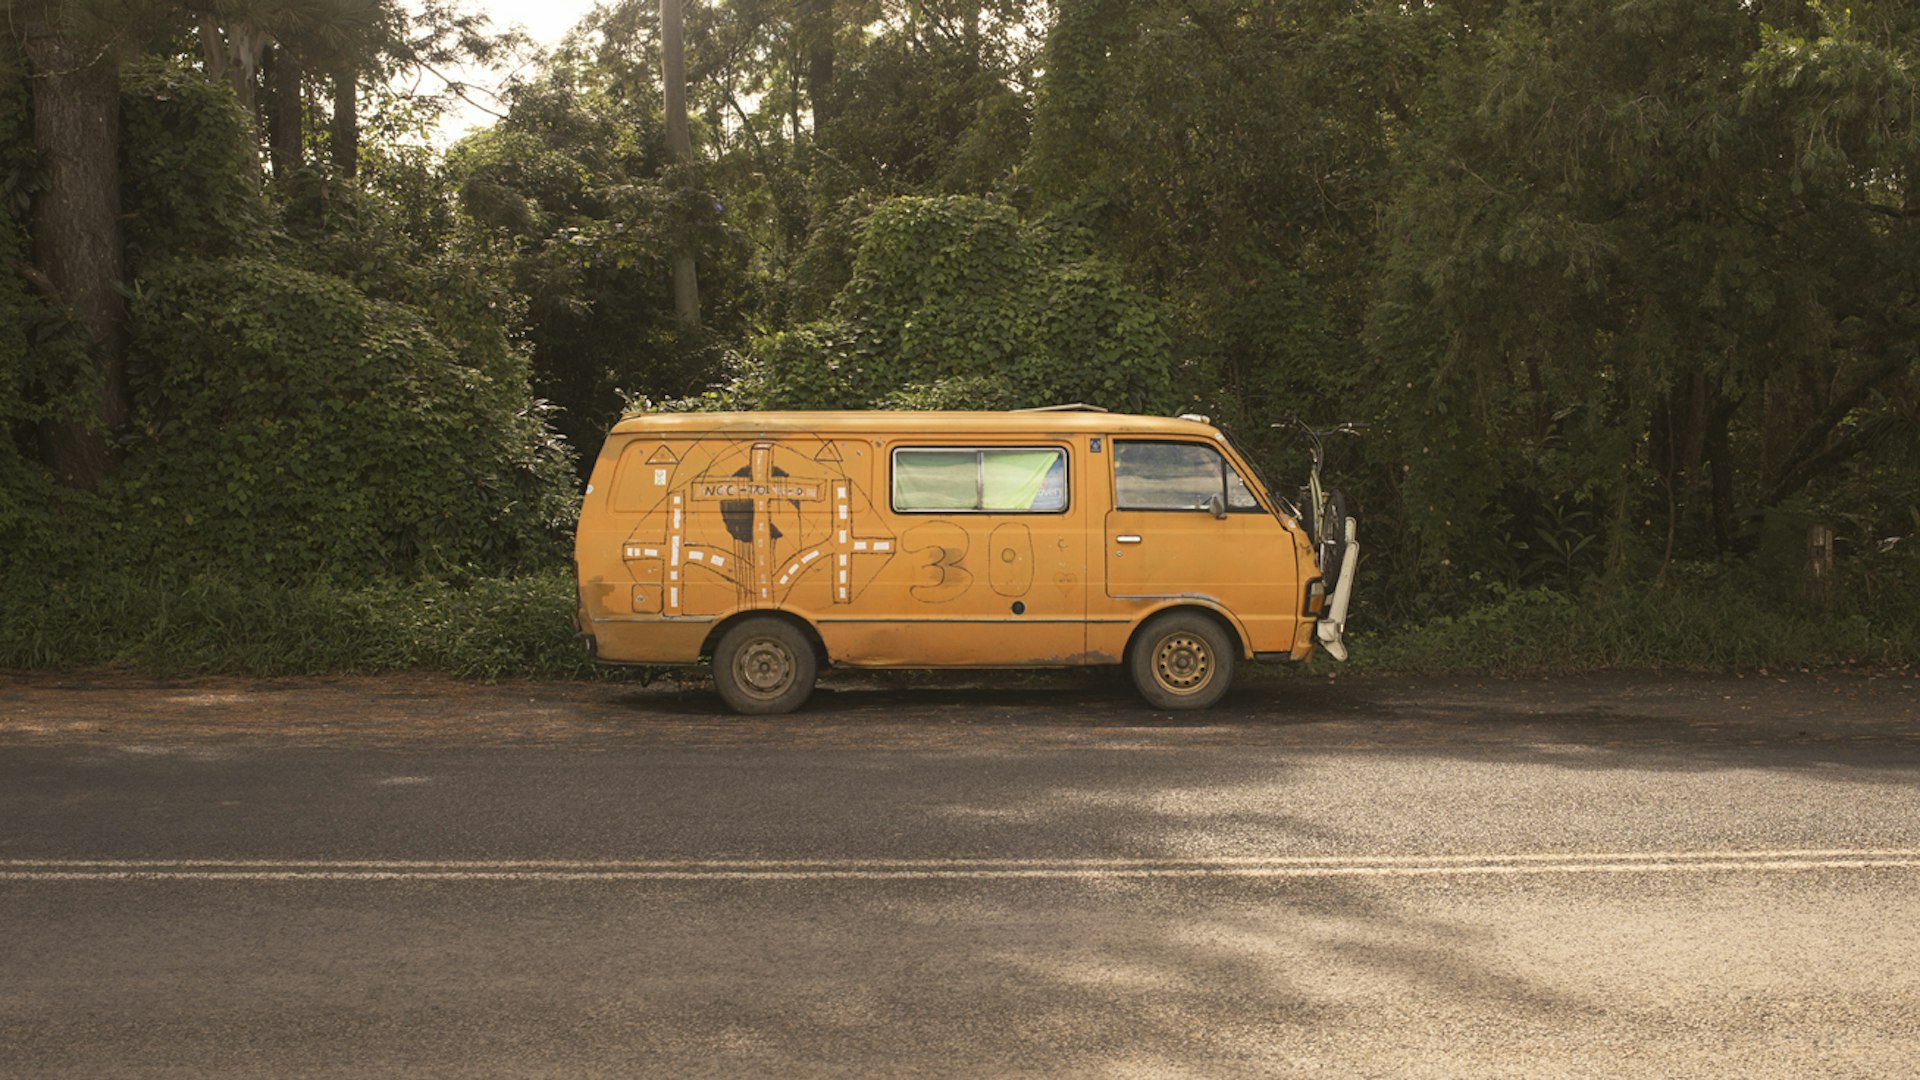 Gypsee's Van